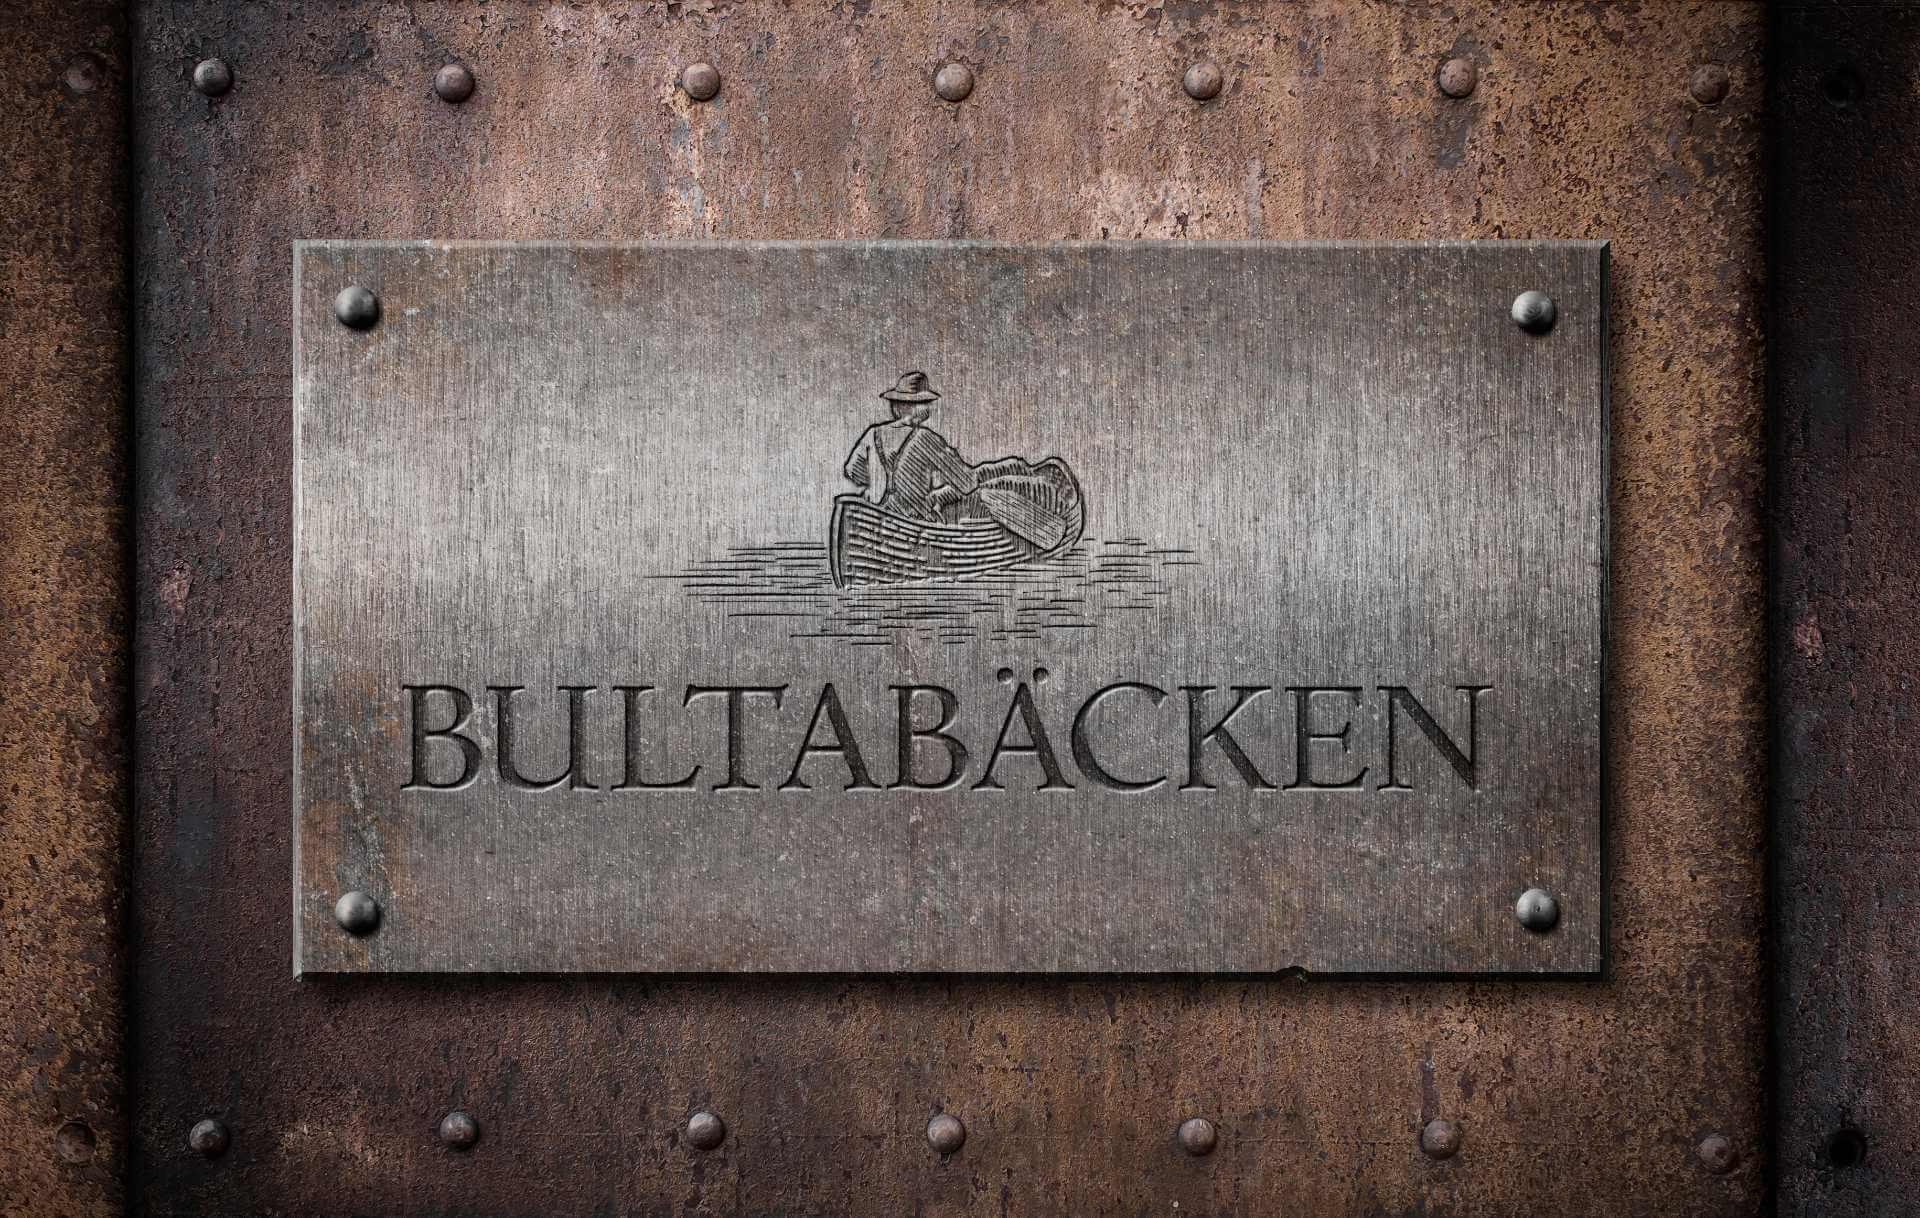 About Bultabäcken